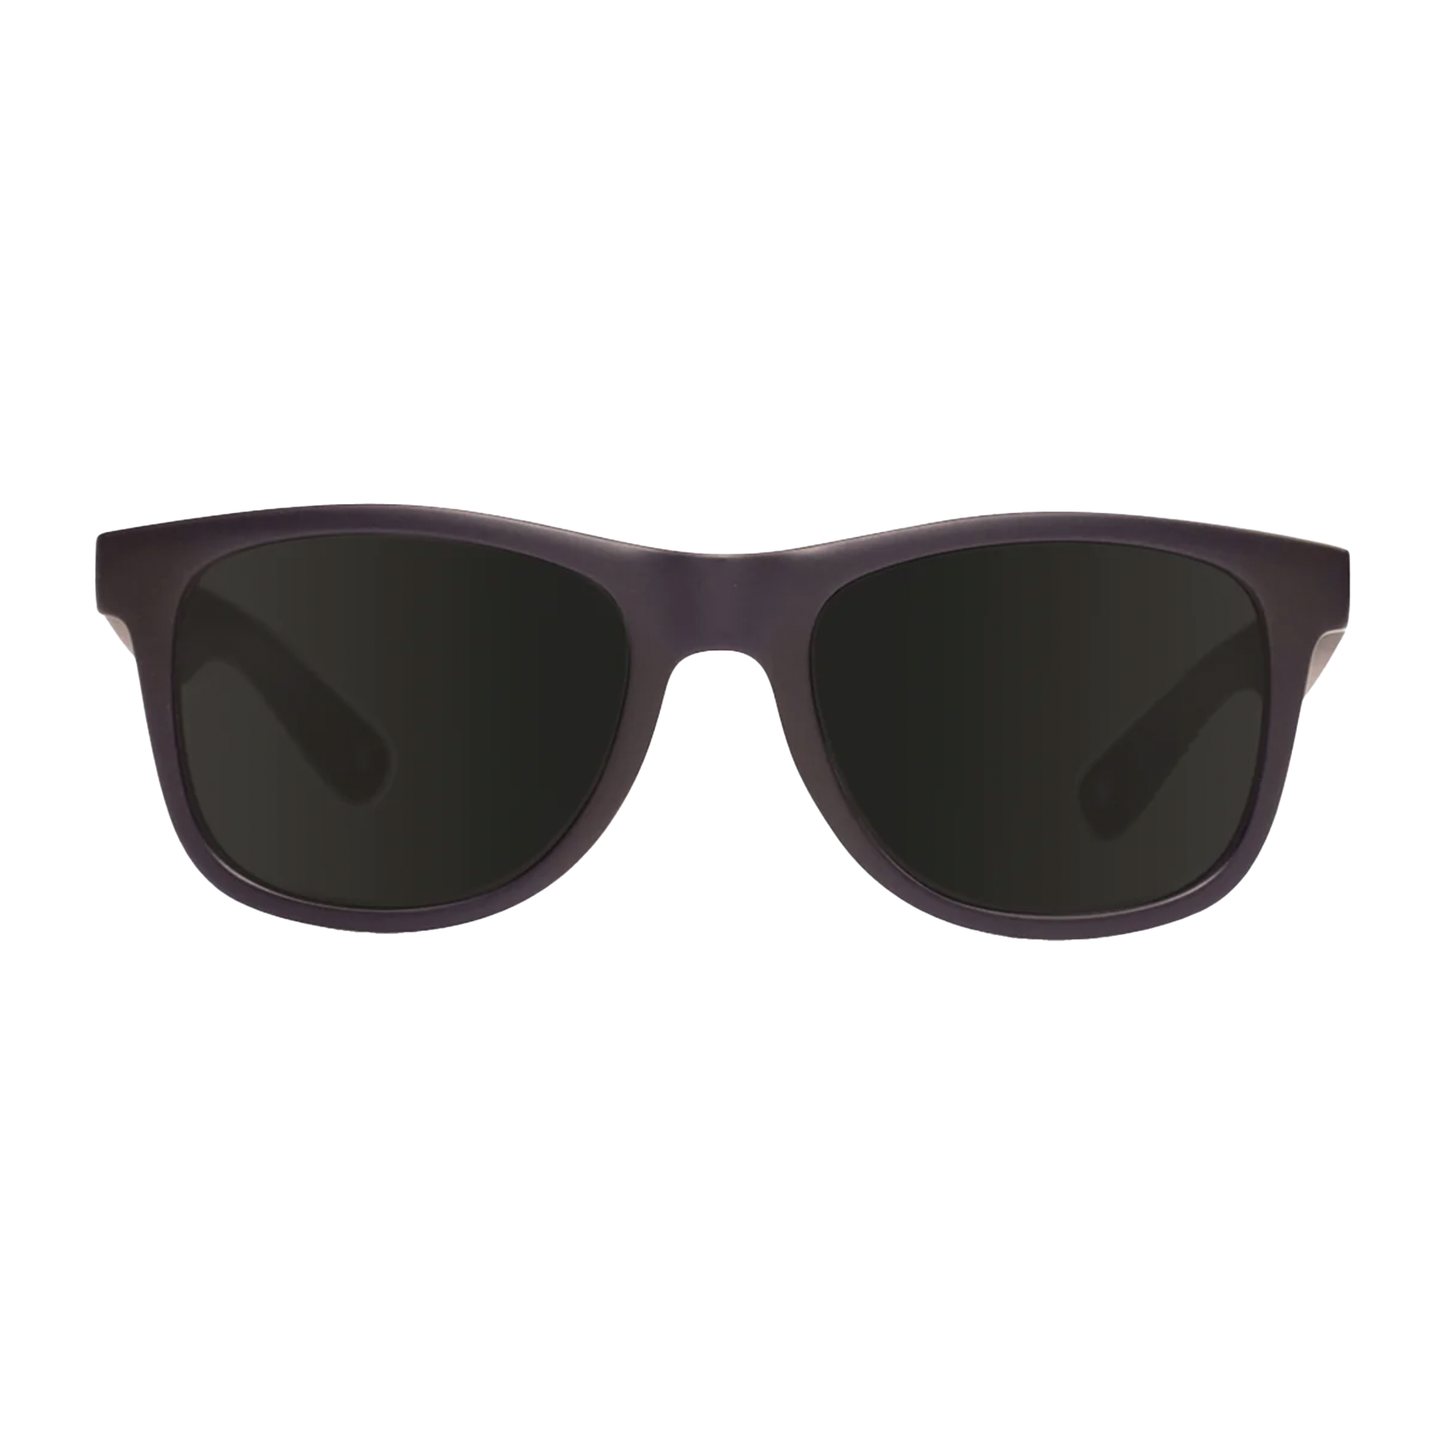 Cassette OGLX Sunglasses - Matte Navy / Smoke Lens